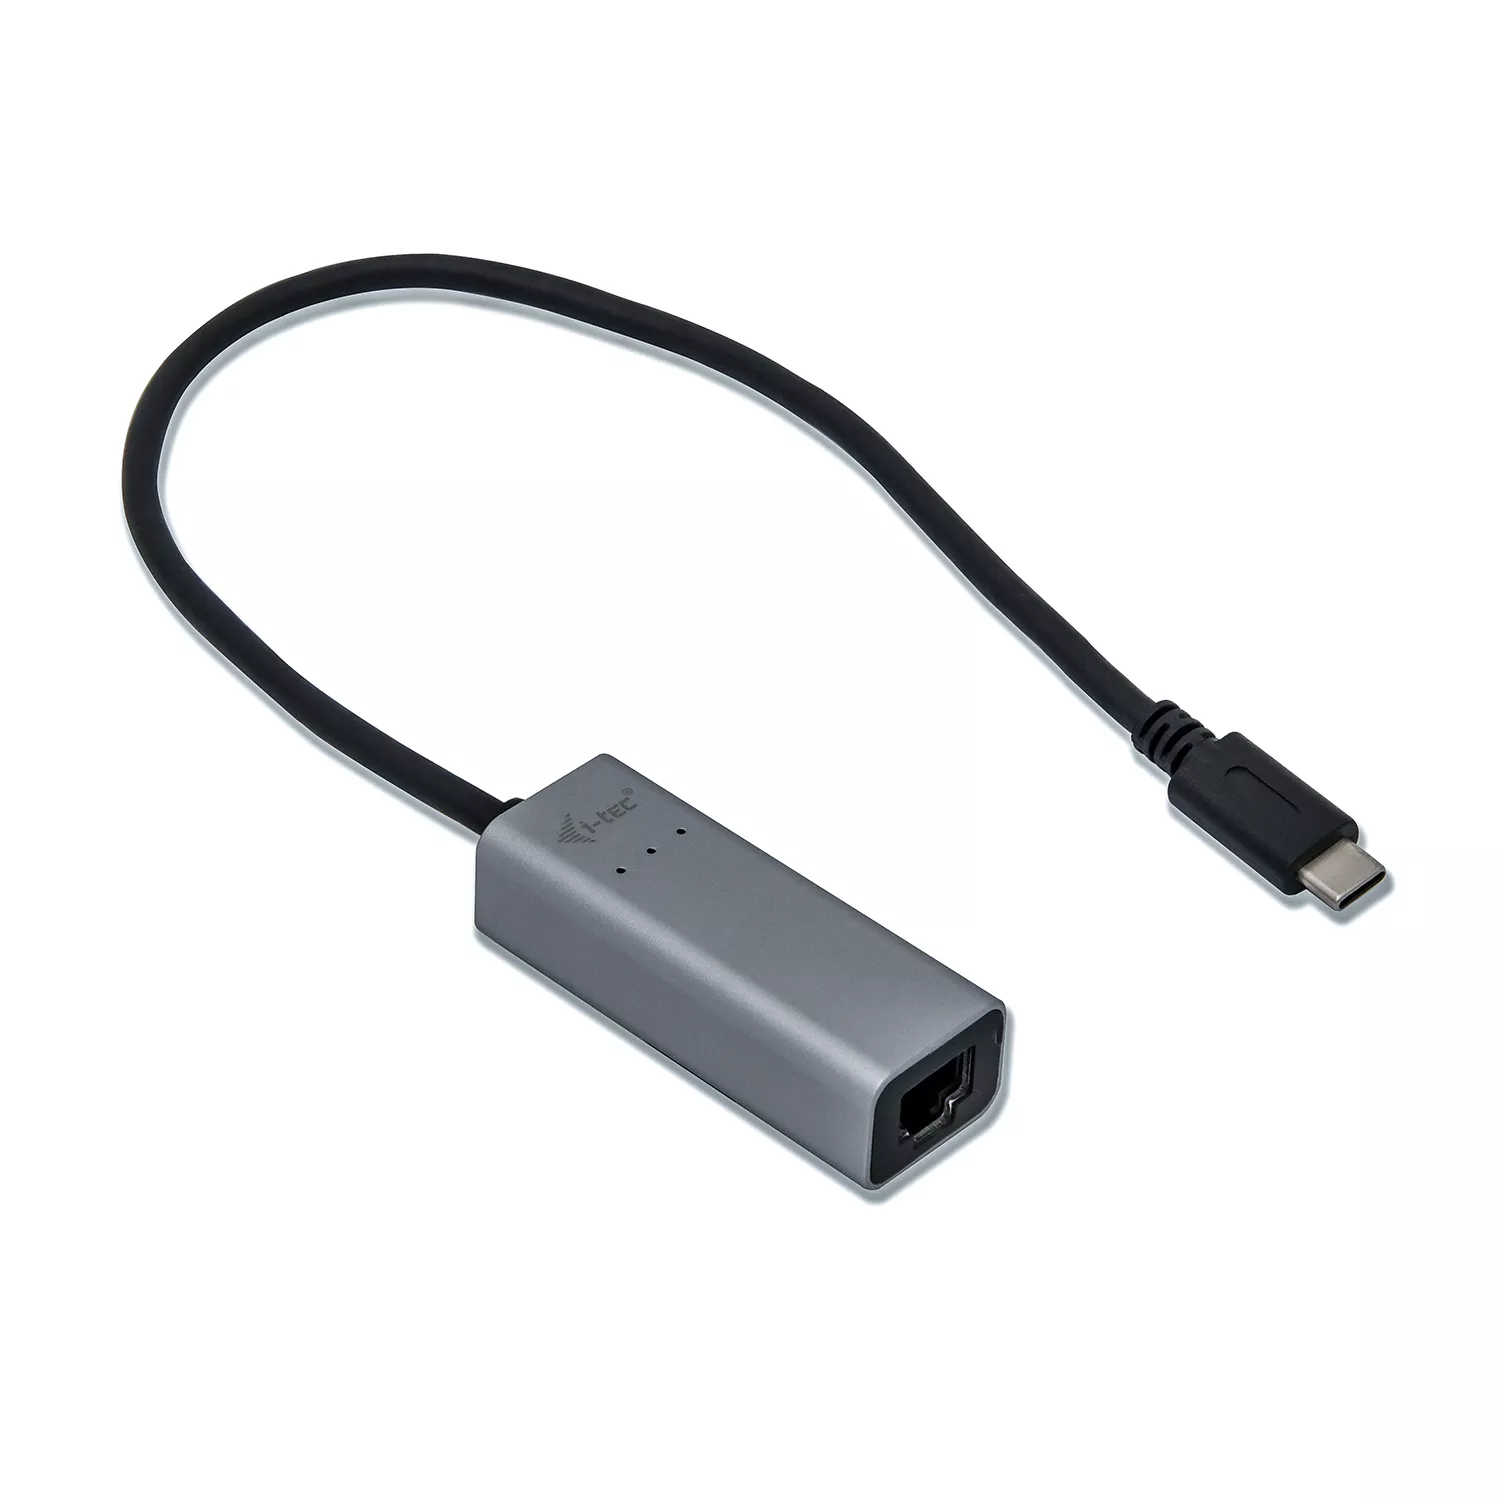 Vente I-TEC USB-C Metal Gigabit Ethernet Adapter 1xUSB-C to i-tec au meilleur prix - visuel 2